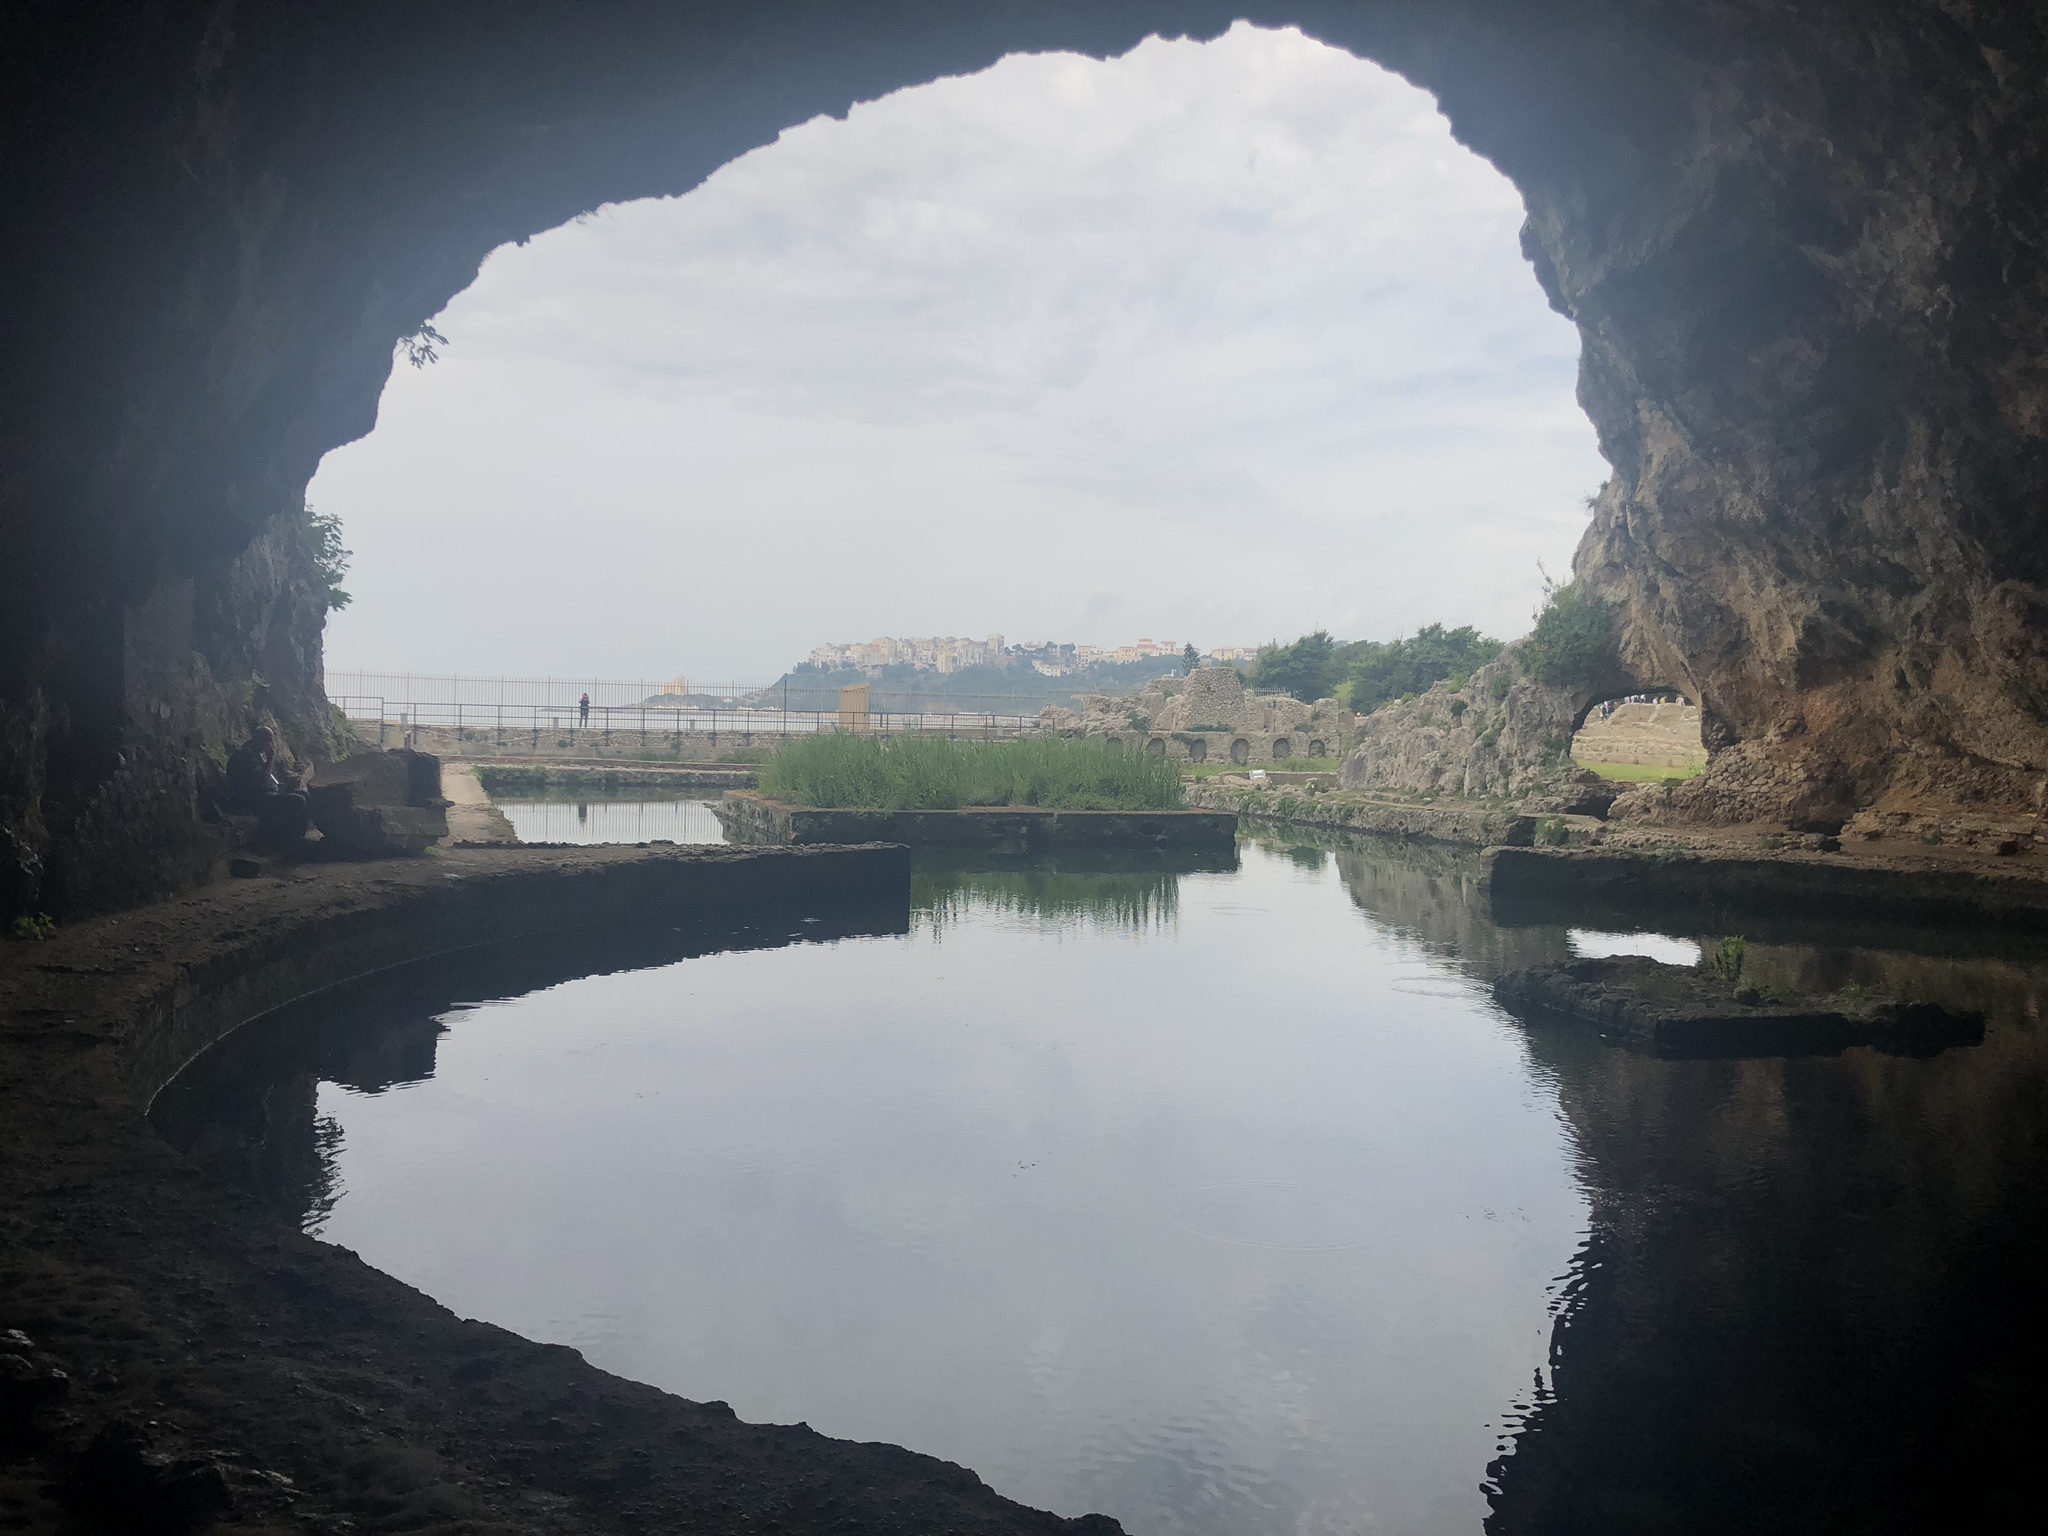 Cave villa of Emperor Tiberius in Sperlonga.